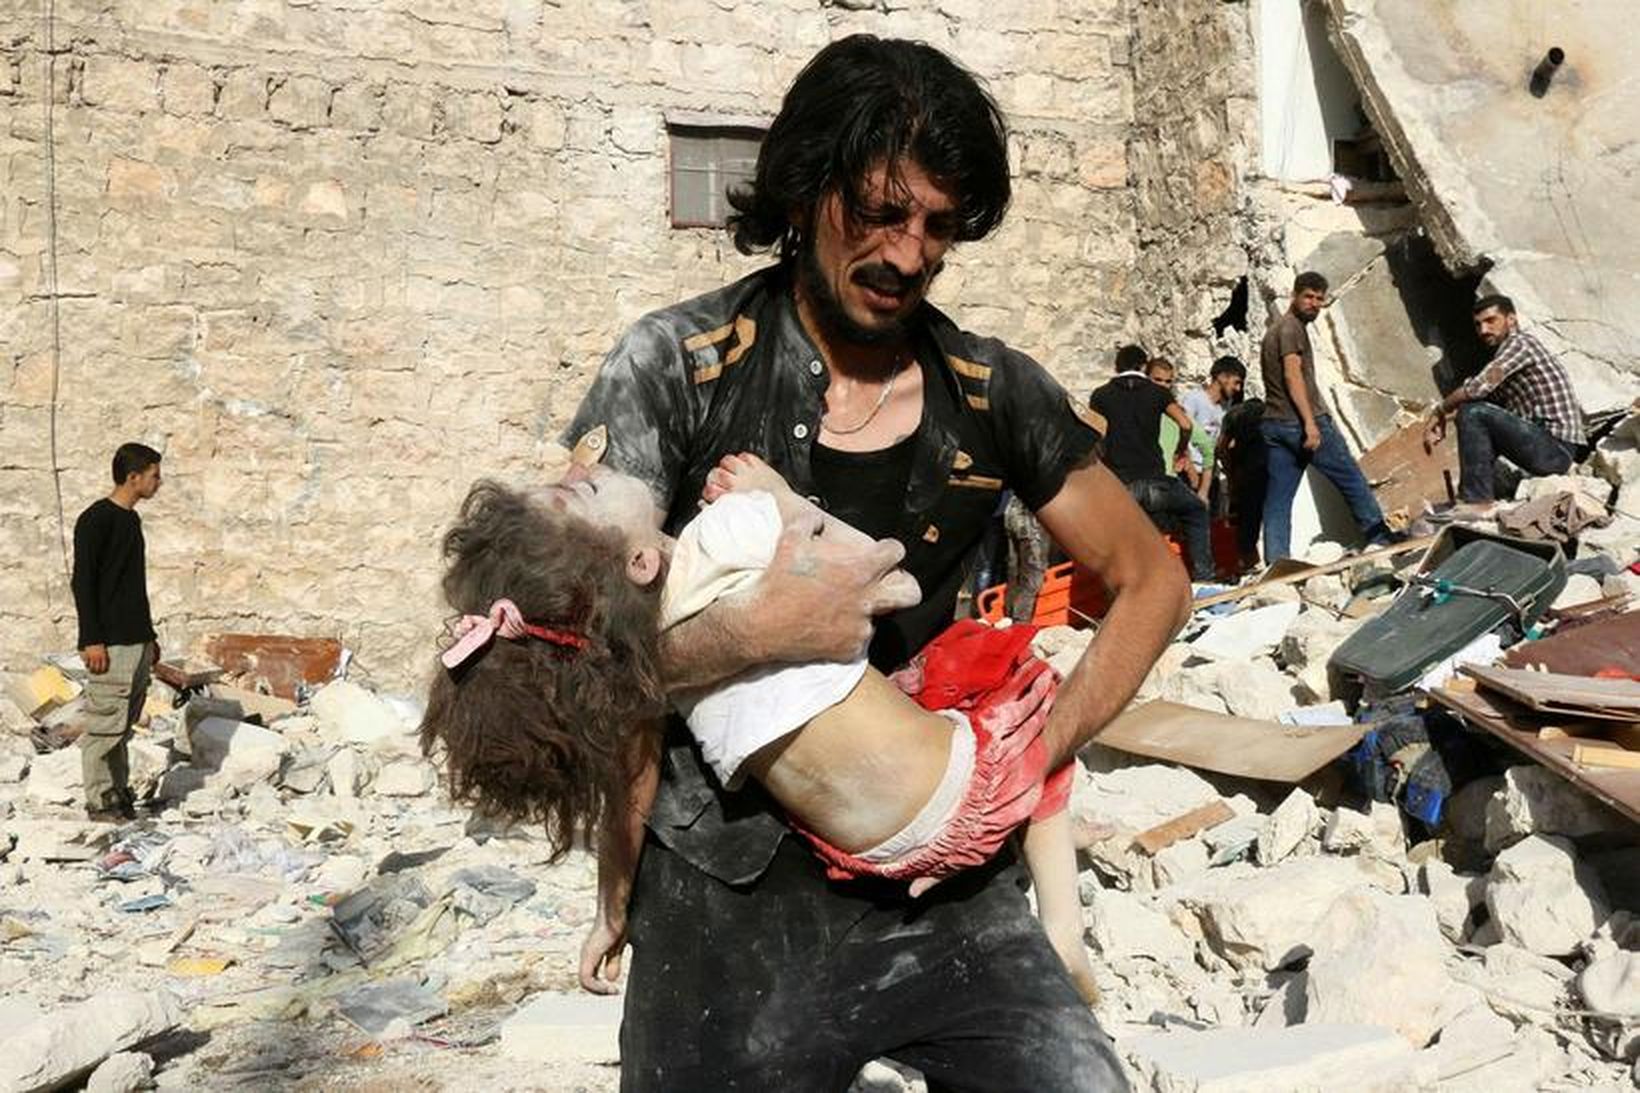 Rússneski flugherinn framkvæmdi miskunnarlausar árásir á óbreytta borgara í Aleppo. …